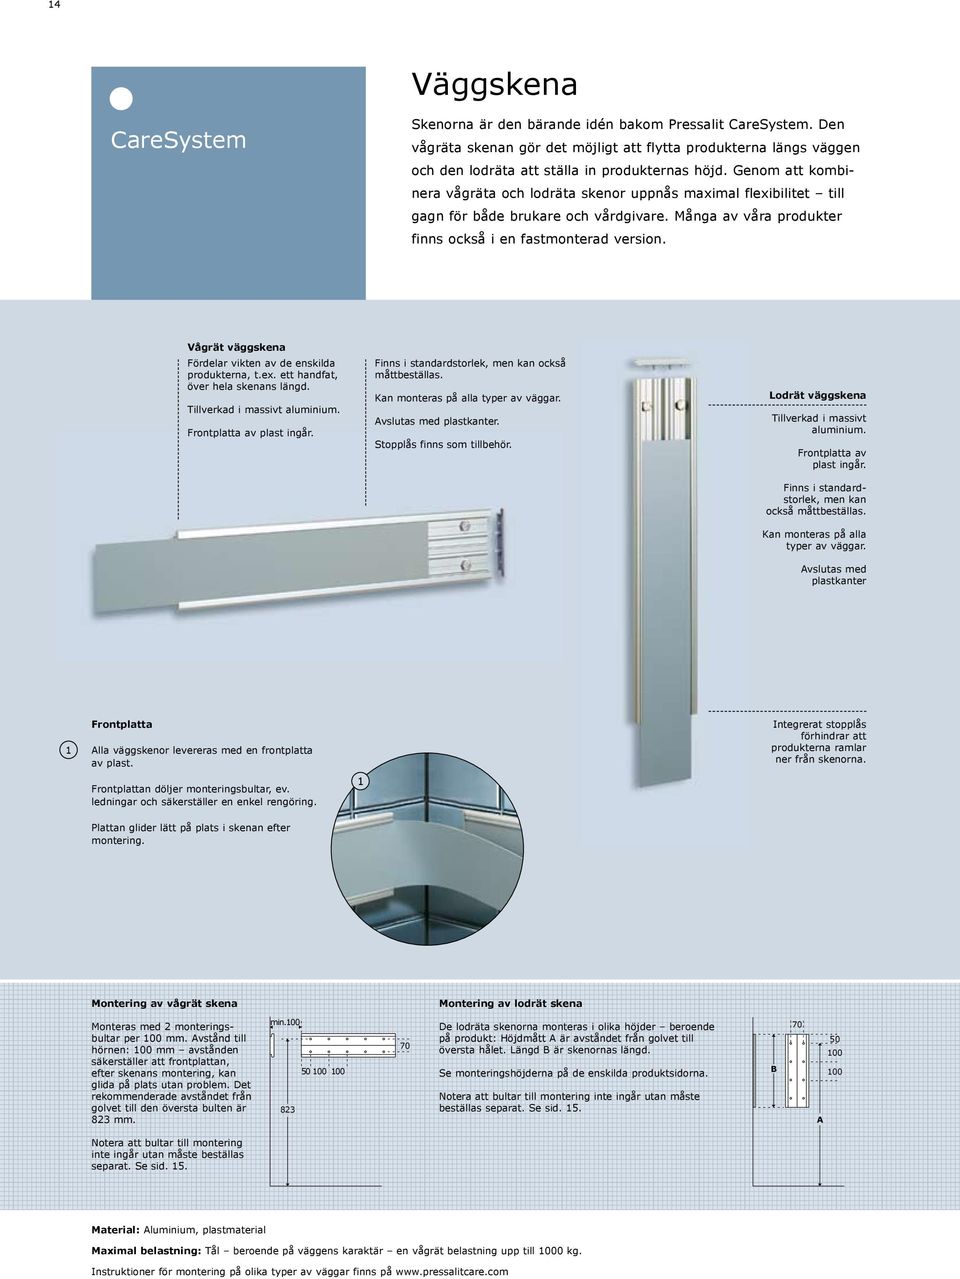 Vågrät väggskena Fördelar vikten av de enskilda produkterna, t.ex. ett handfat, över hela skenans längd. Tillverkad i massivt aluminium. Frontplatta av plast ingår.